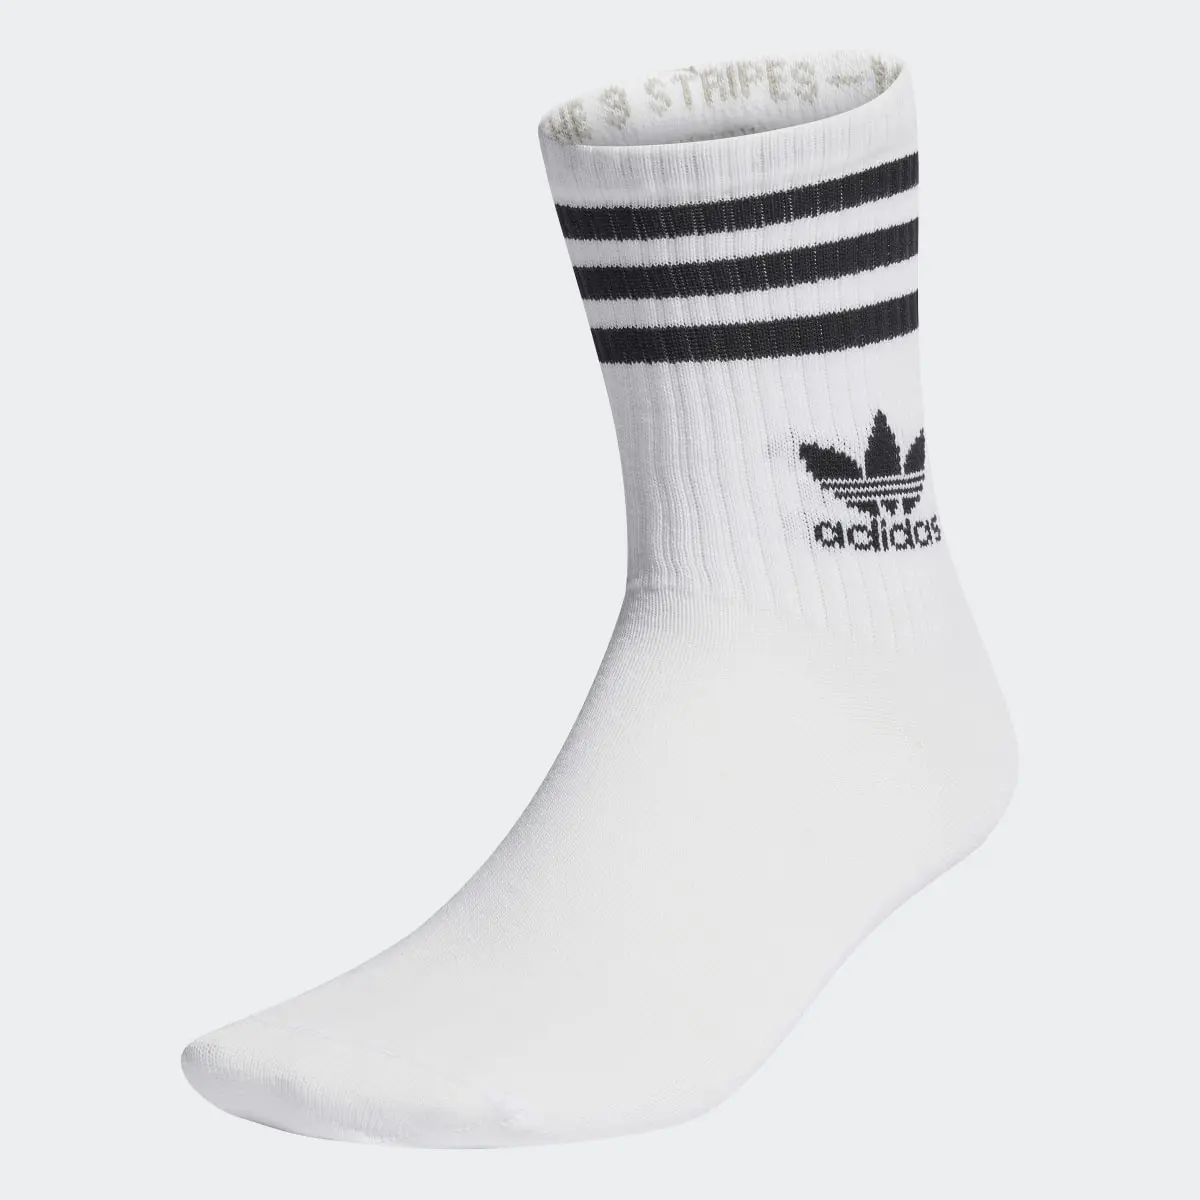 Adidas Mid Cut Bilekli Çorap - 3 Çift. 1